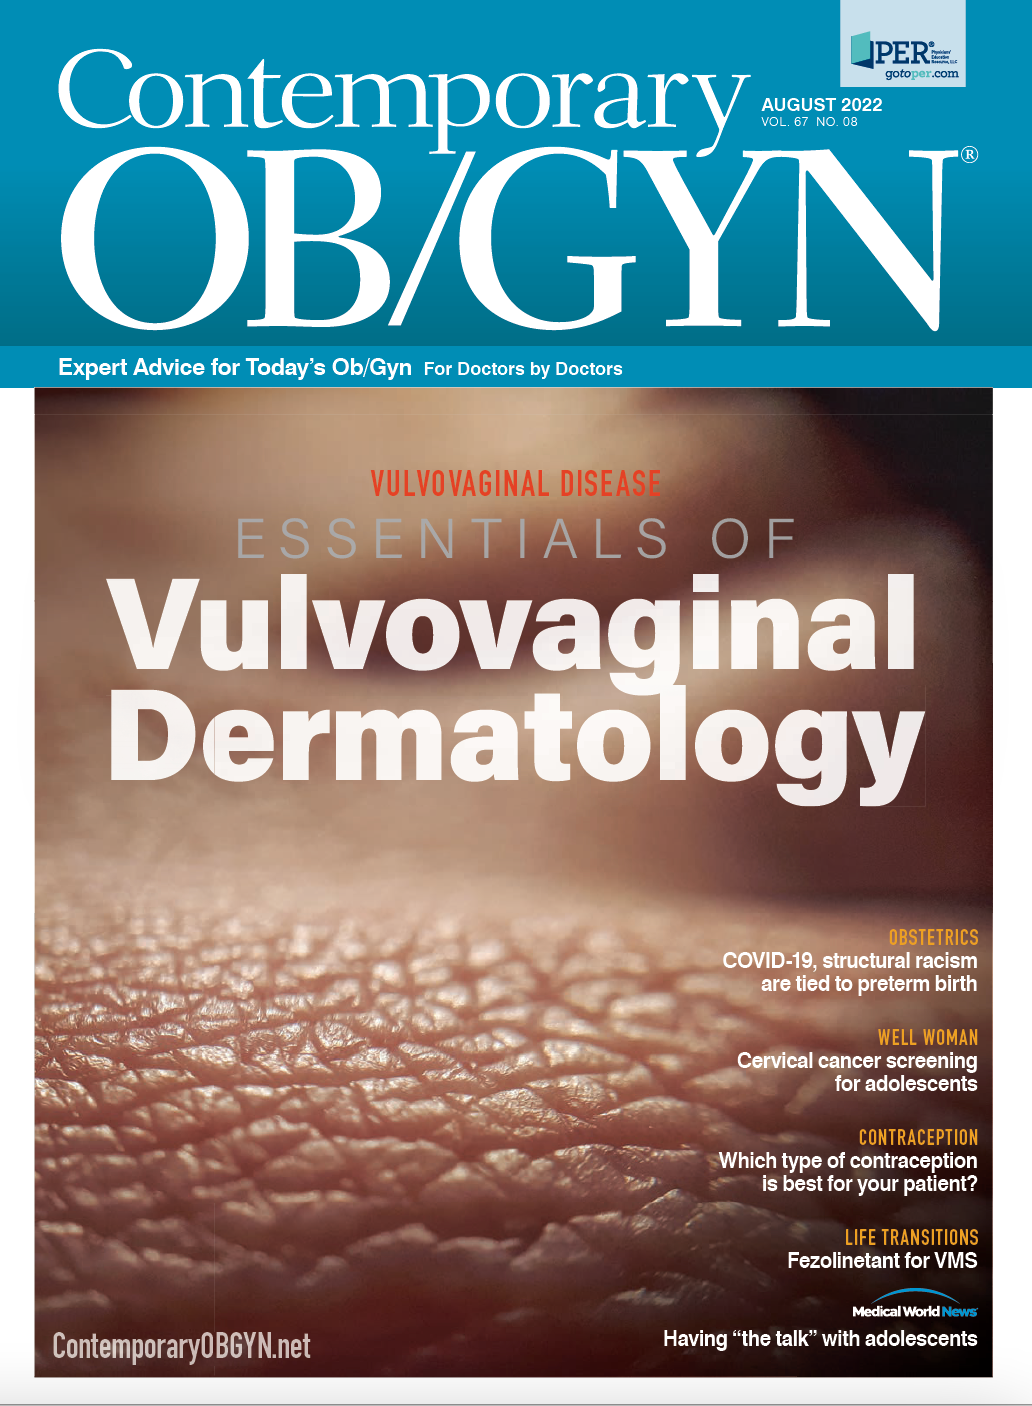 Essentials of vulvovaginal dermatology